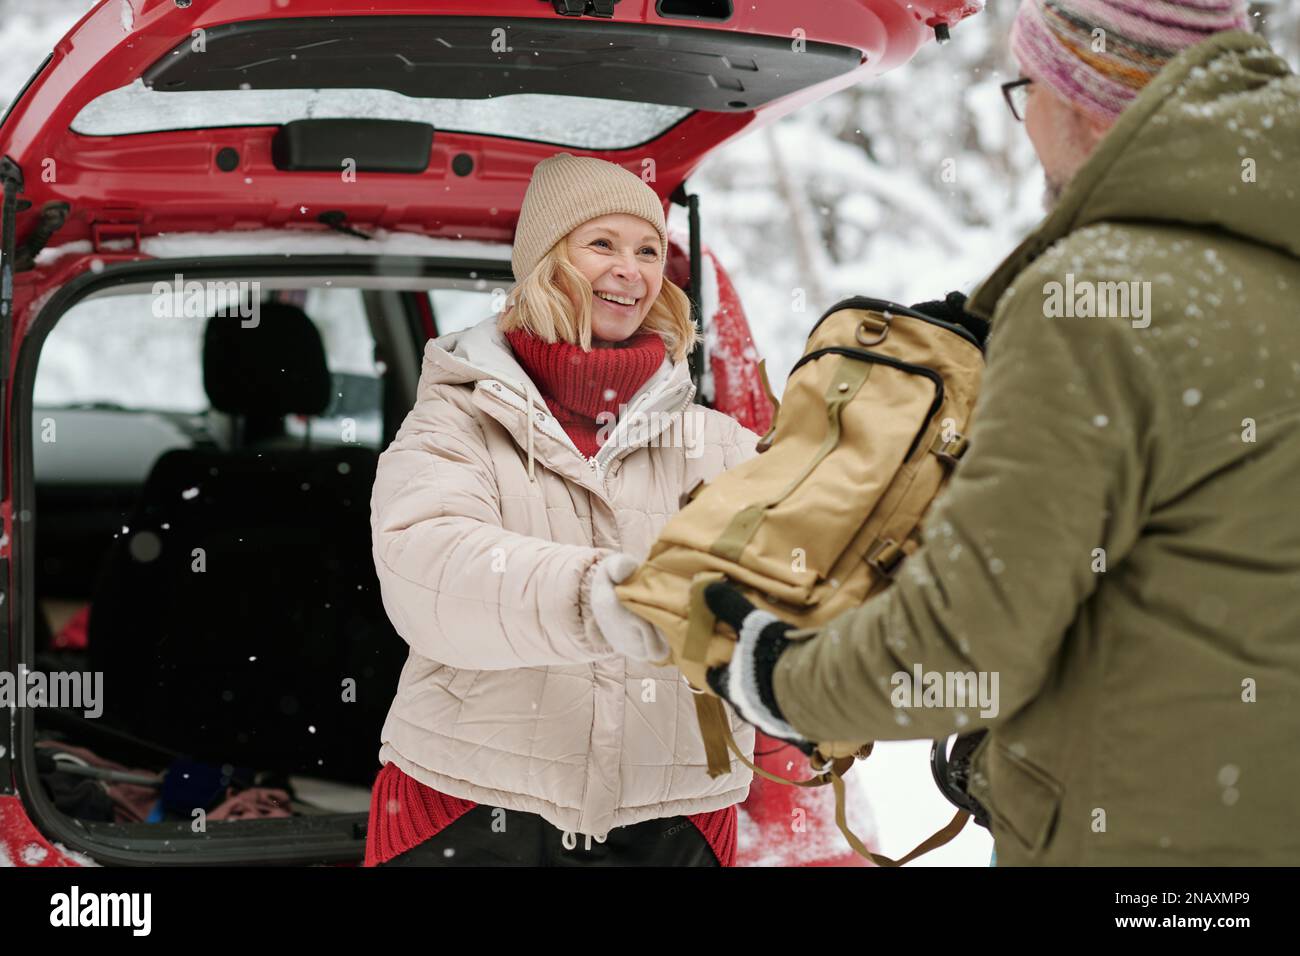 Reife, fröhliche Frau in warmer Winterjacke und Mütze, die ihren Rucksack mit Proviant an ihren Mann weitergibt, während sie am Auto steht Stockfoto